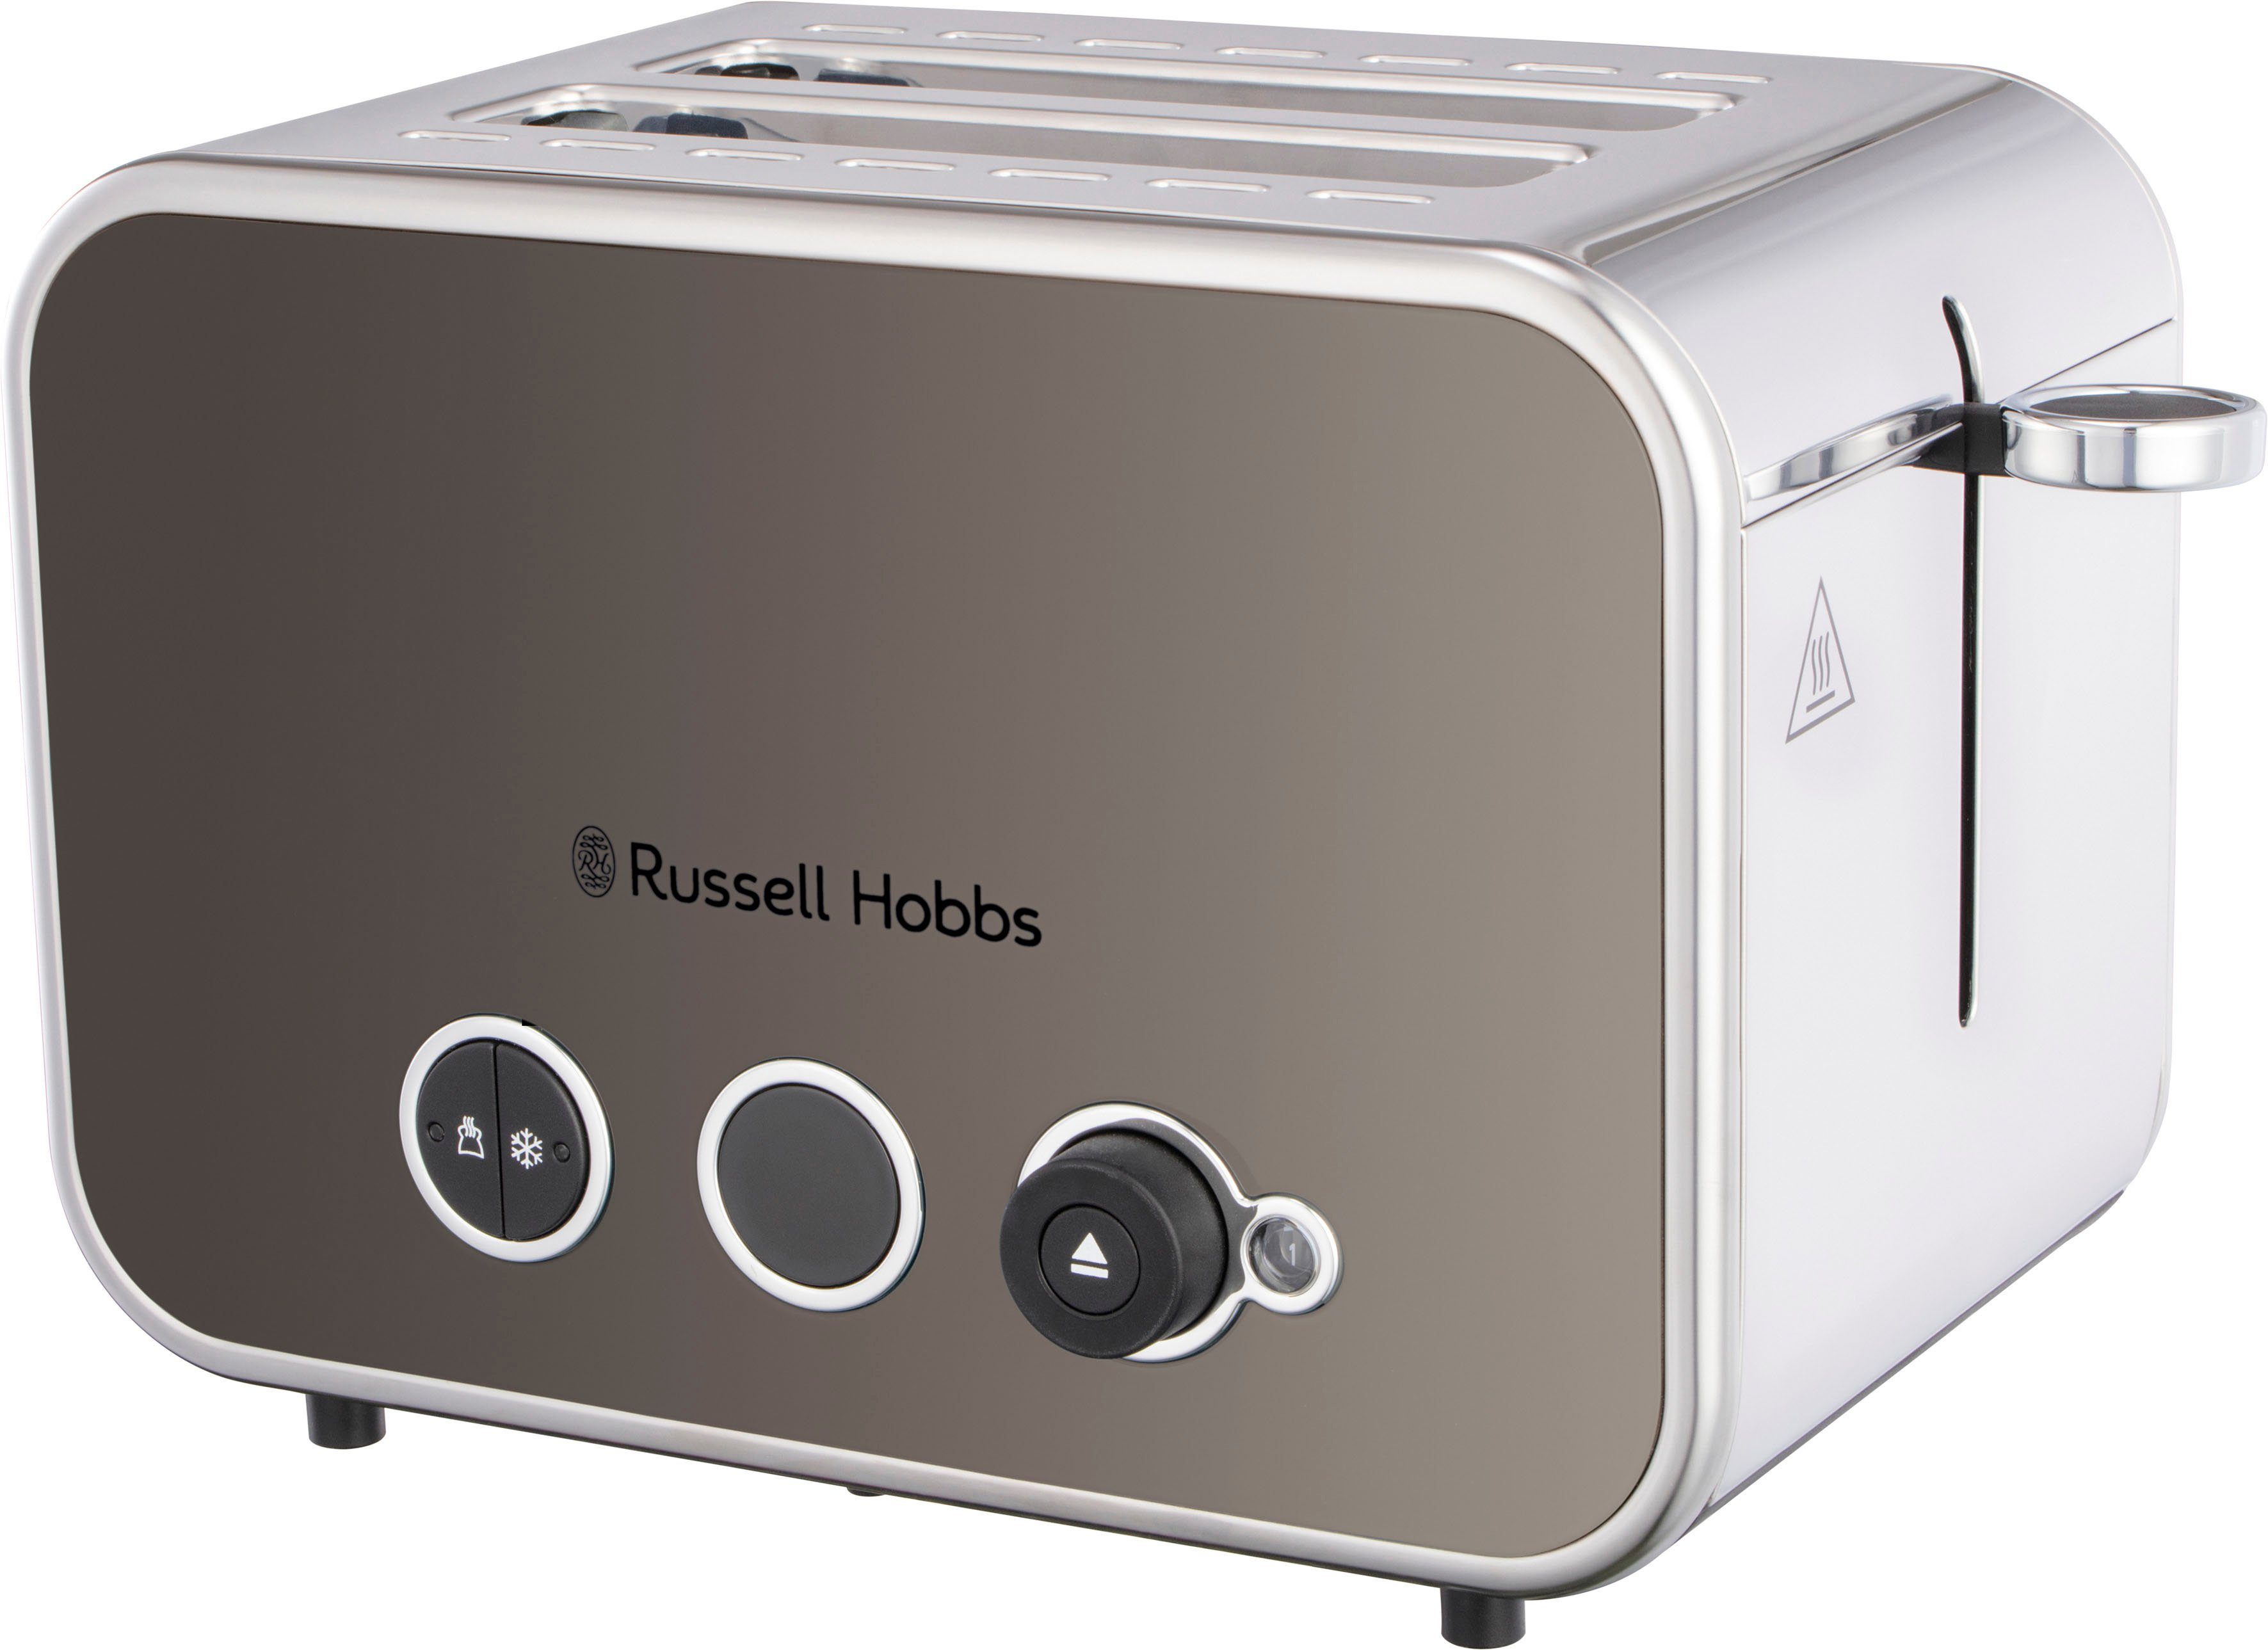 RUSSELL HOBBS Toaster Schlitze, W, Titanium Scheiben, Brötchenaufsatz, 1600 2 Watt 1.600 2 26432-56, Distinctions kurze Krümelschublade, für